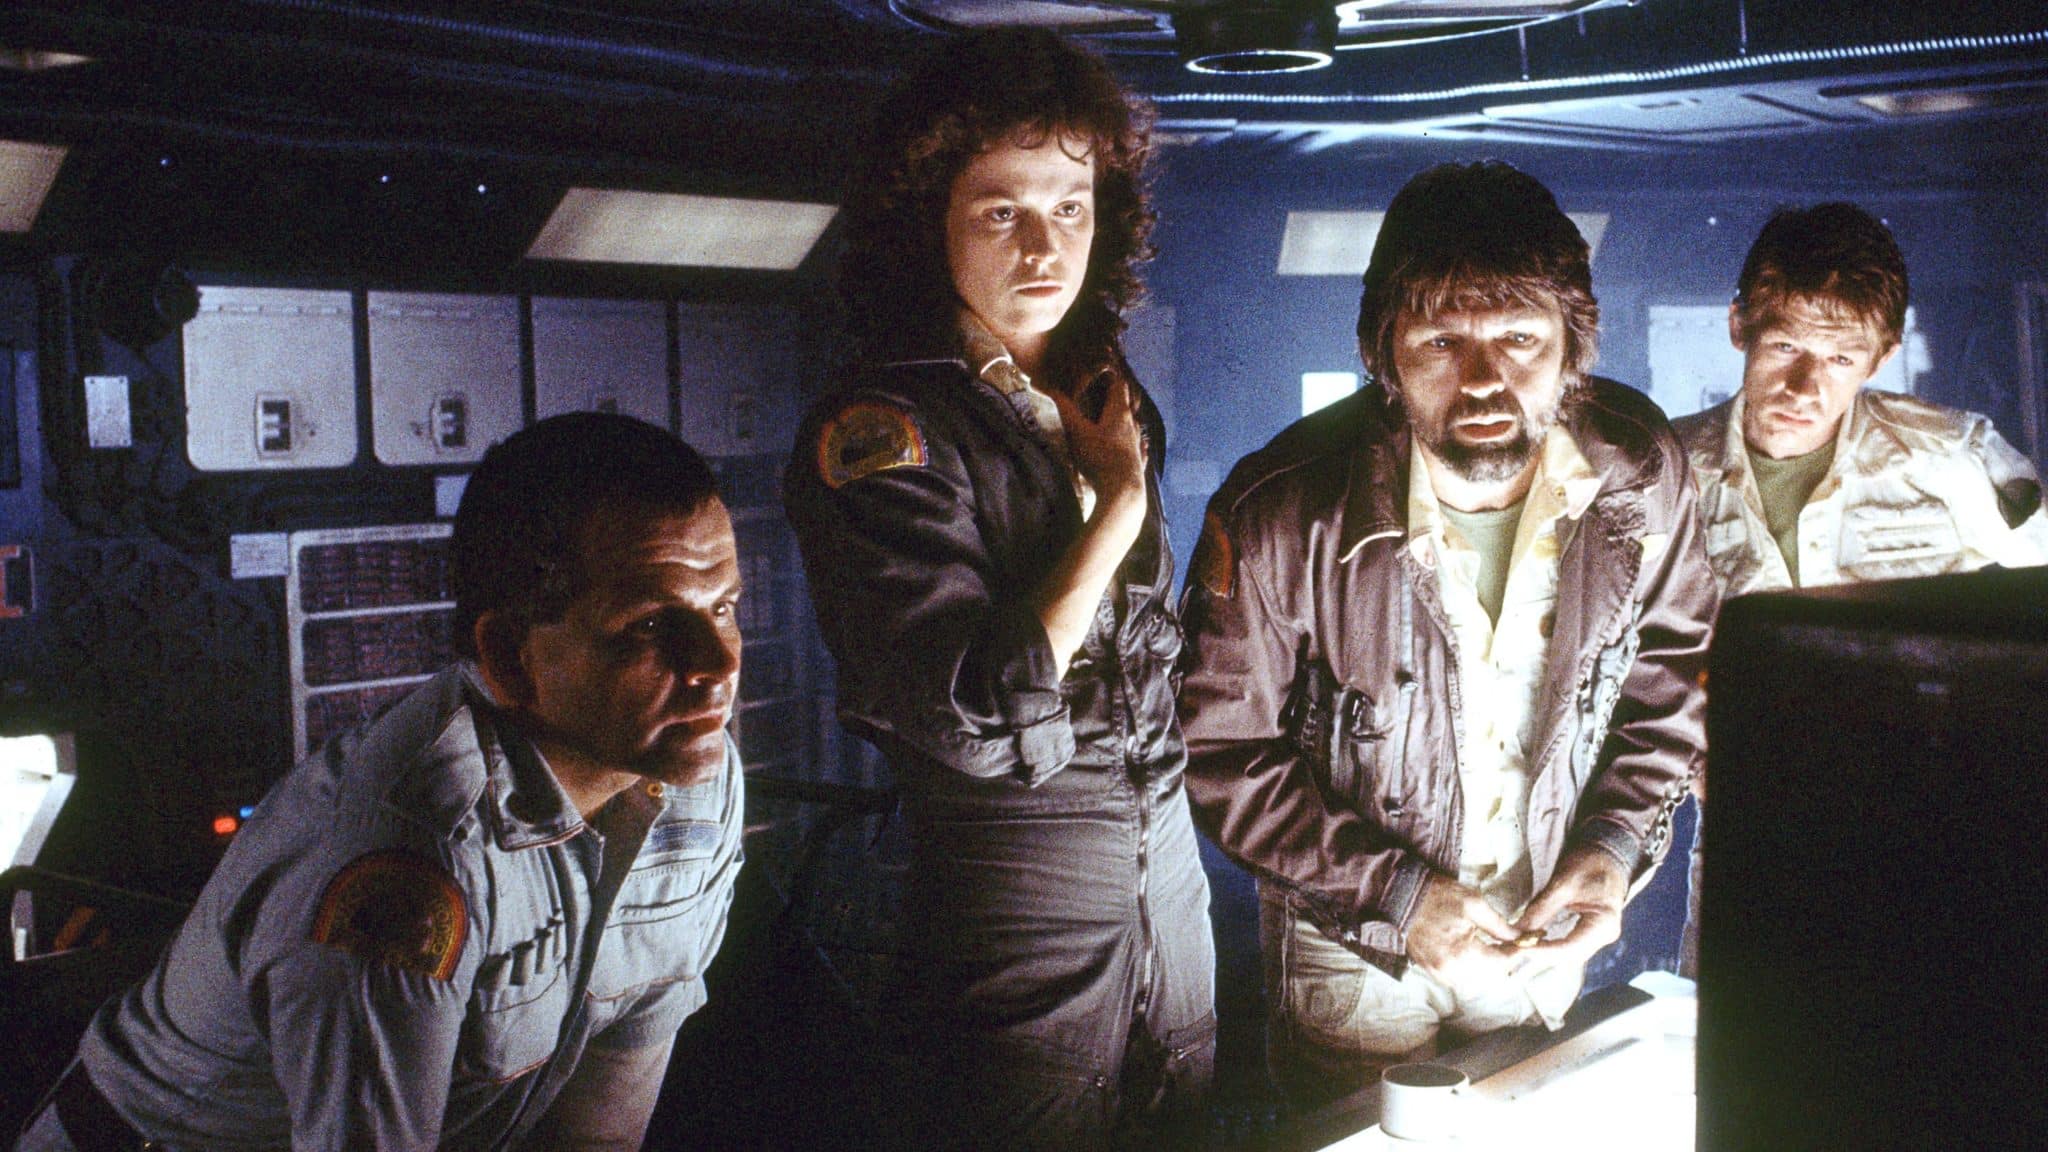 devotudoaocinema.com.br - "Alien, o Oitavo Passageiro", de Ridley Scott, na STAR PLUS